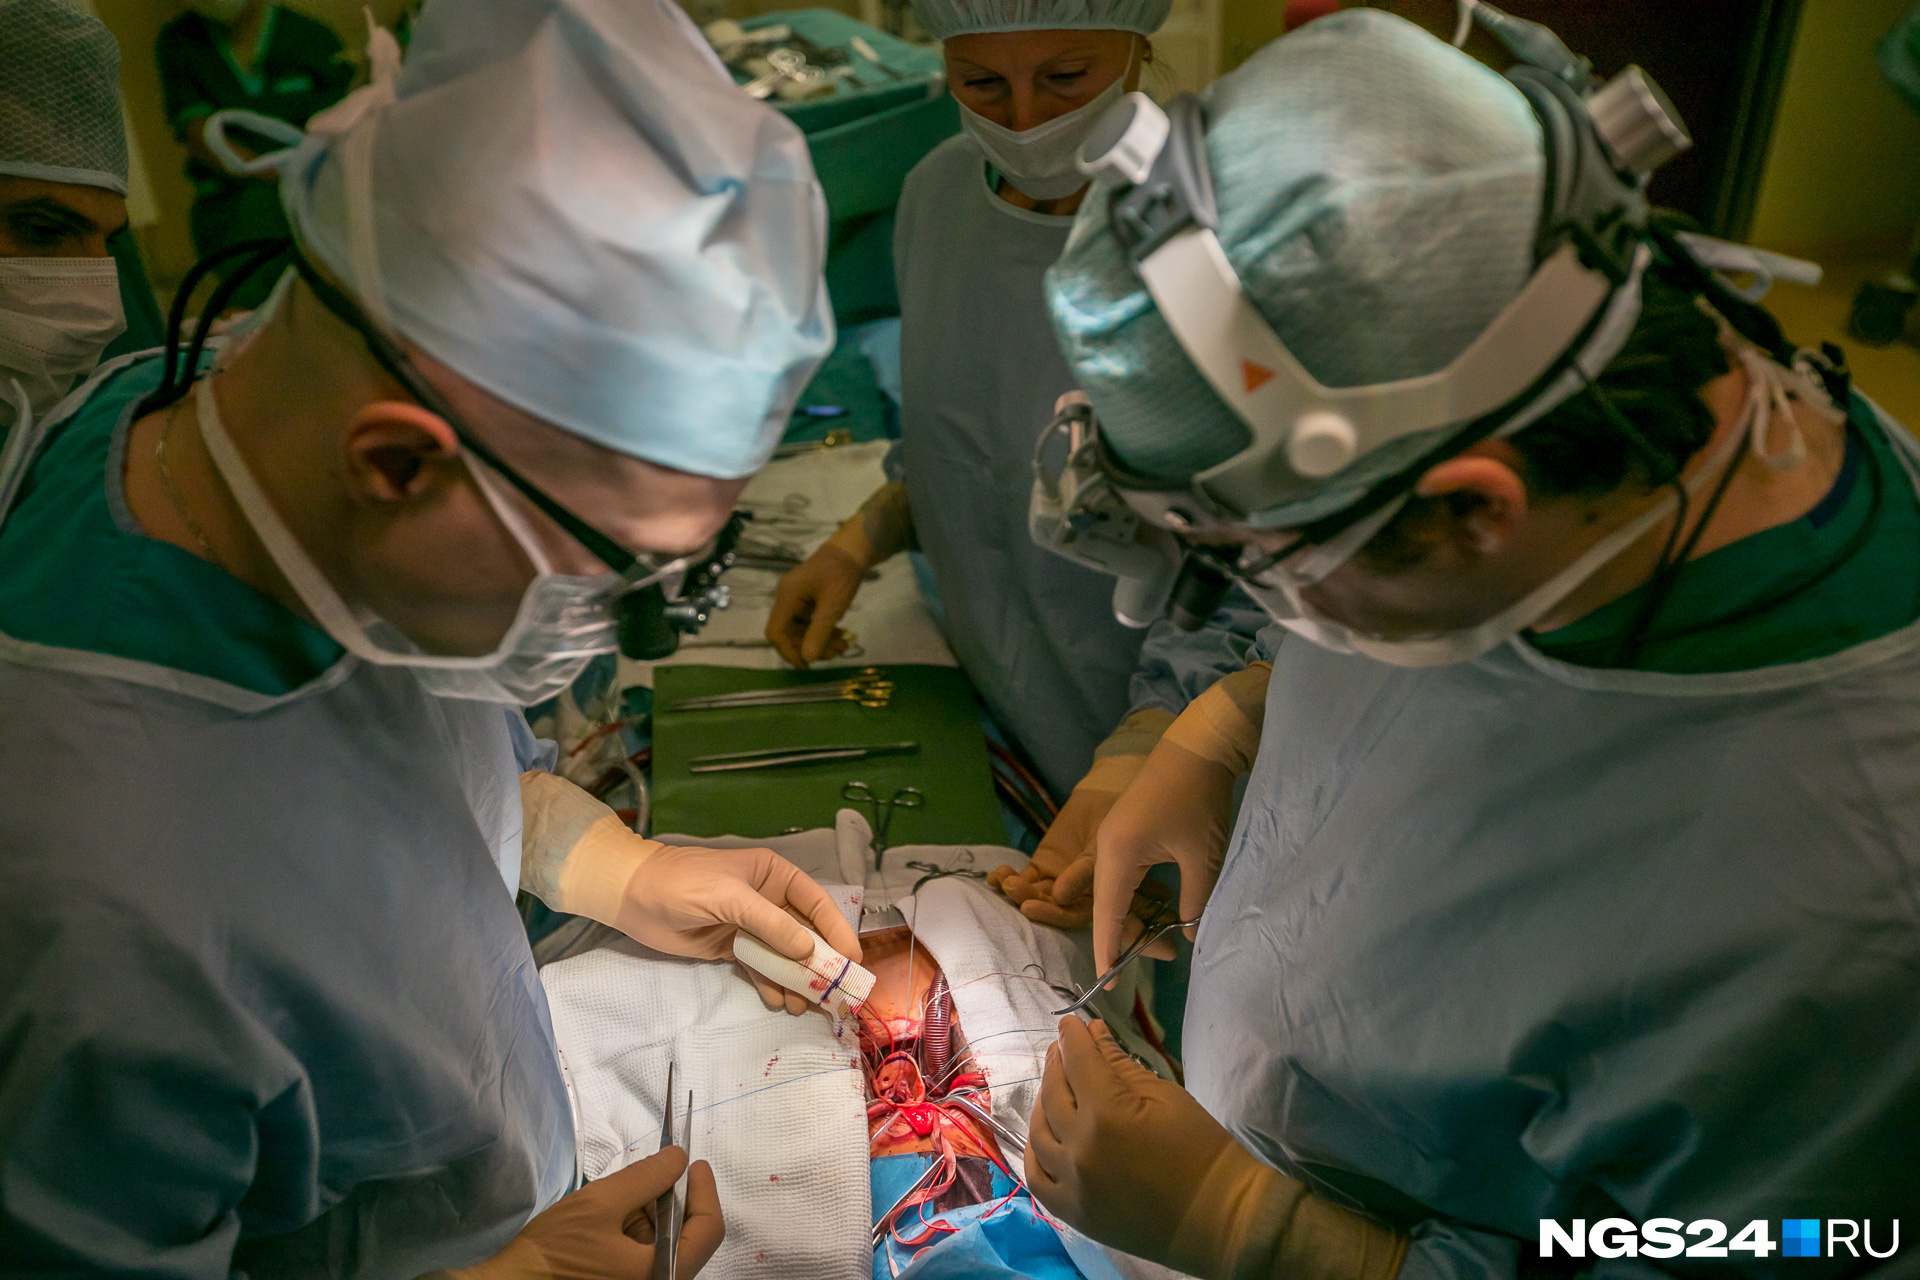 Хирург больницы № 7 оставил иглу в животе красноярки во время операции